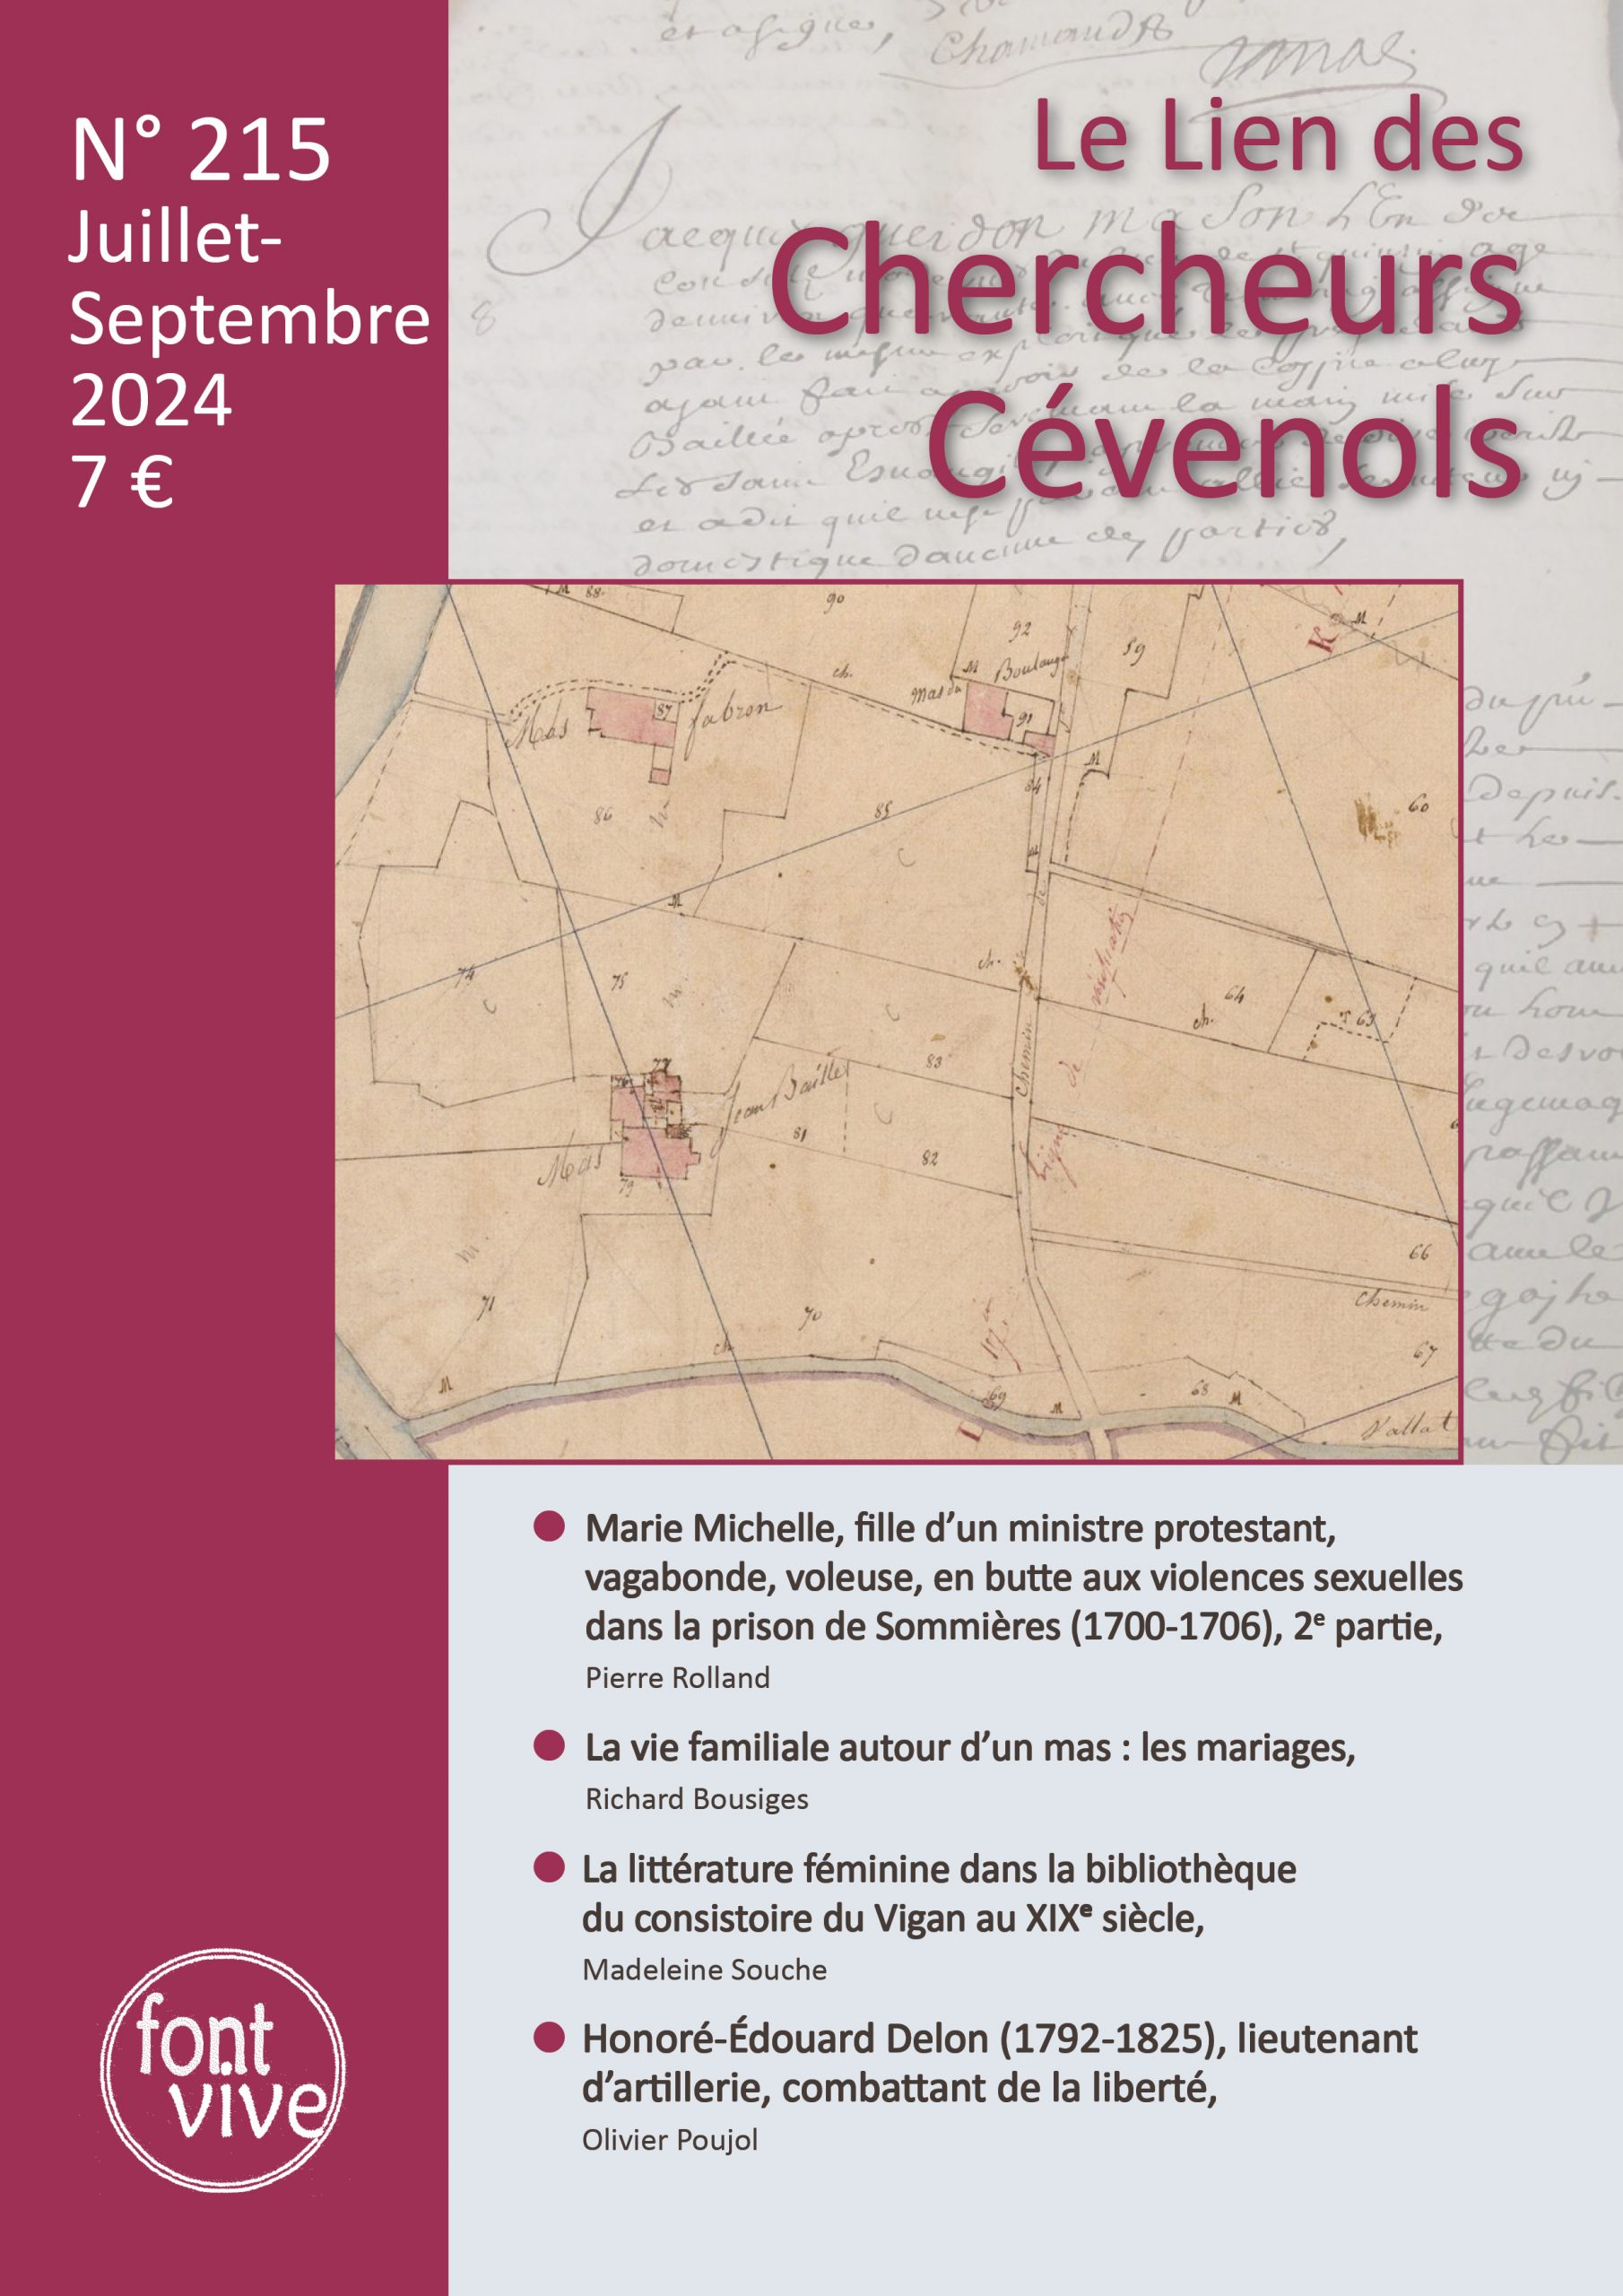 Le Lien des Chercheurs Cévenols, 215 - Juillet - septembre 2024 - Bulletin n° 215